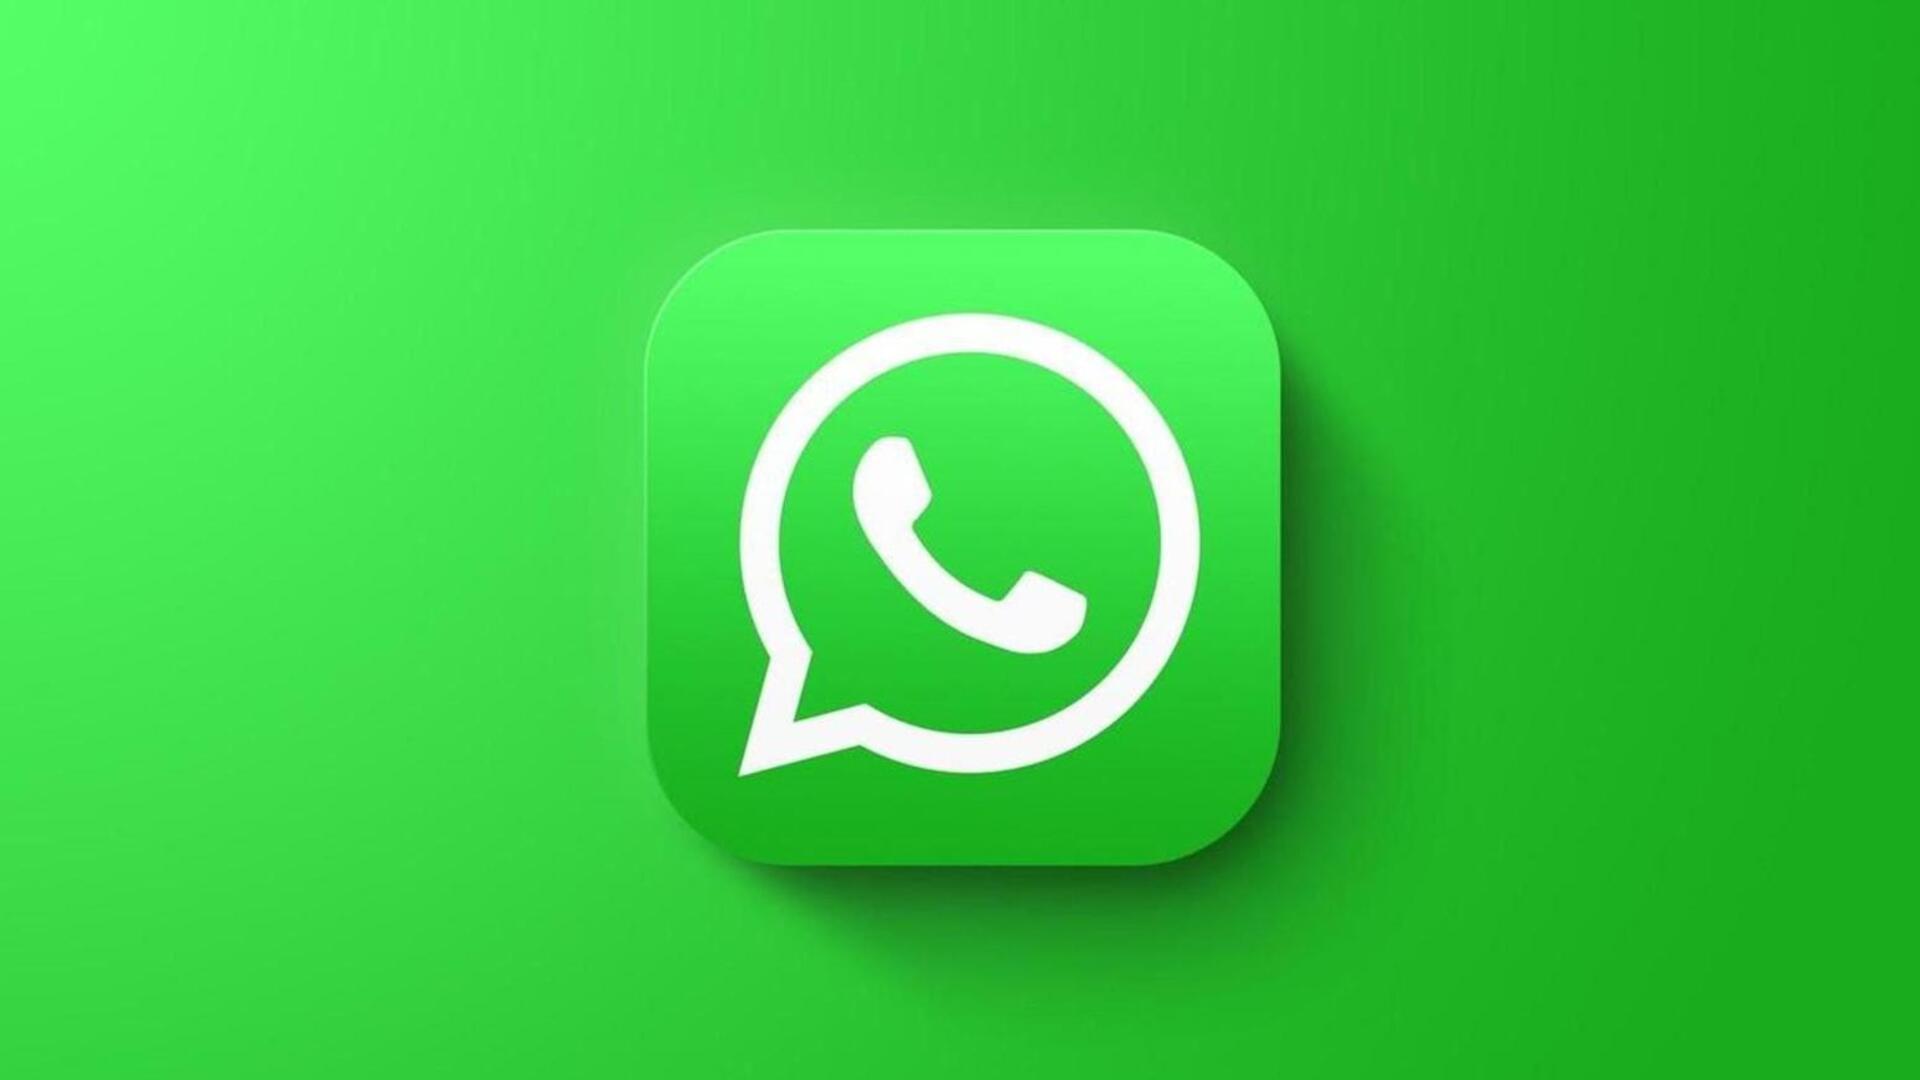 व्हाट्सऐप का नया फीचर: एंड्रॉयड यूजर्स मीडिया फाइल ट्रांसफर करते समय अब ऐड कर सकेंगे मैसेज